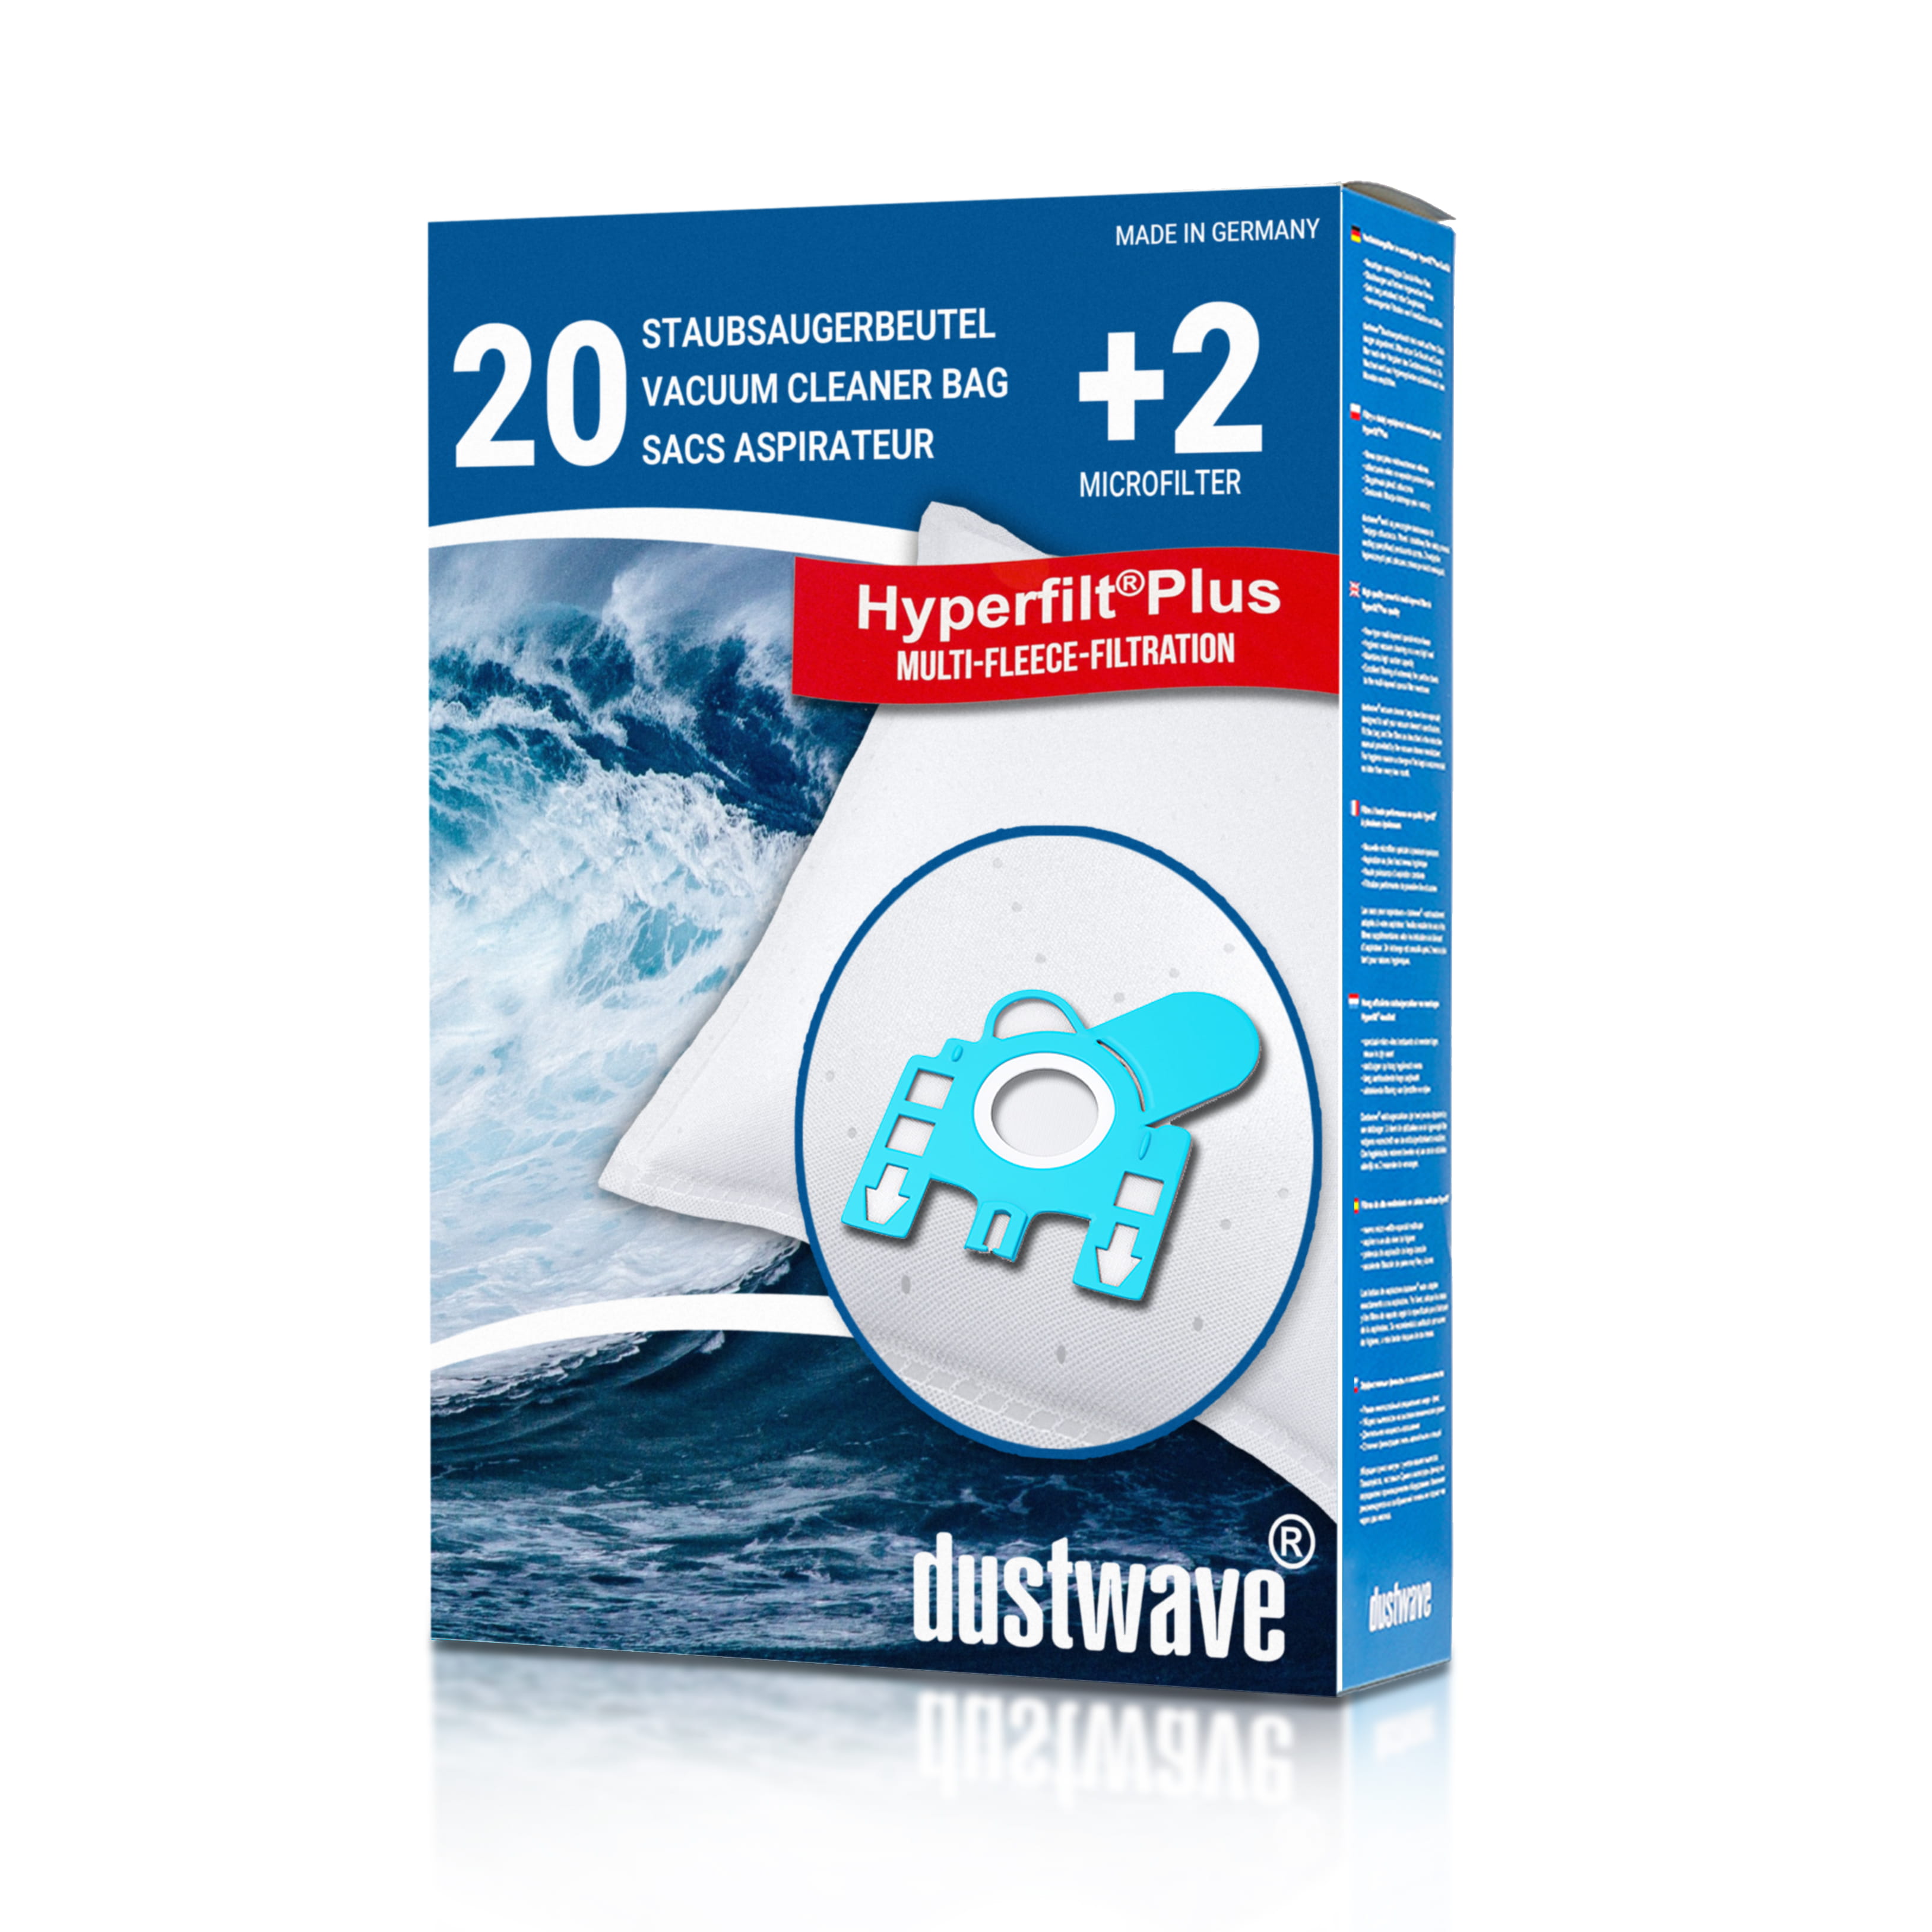 Dustwave® 20 Staubsaugerbeutel für Hoover TS1826 / TRTS1826 - hocheffizient, mehrlagiges Mikrovlies mit Hygieneverschluss - Made in Germany